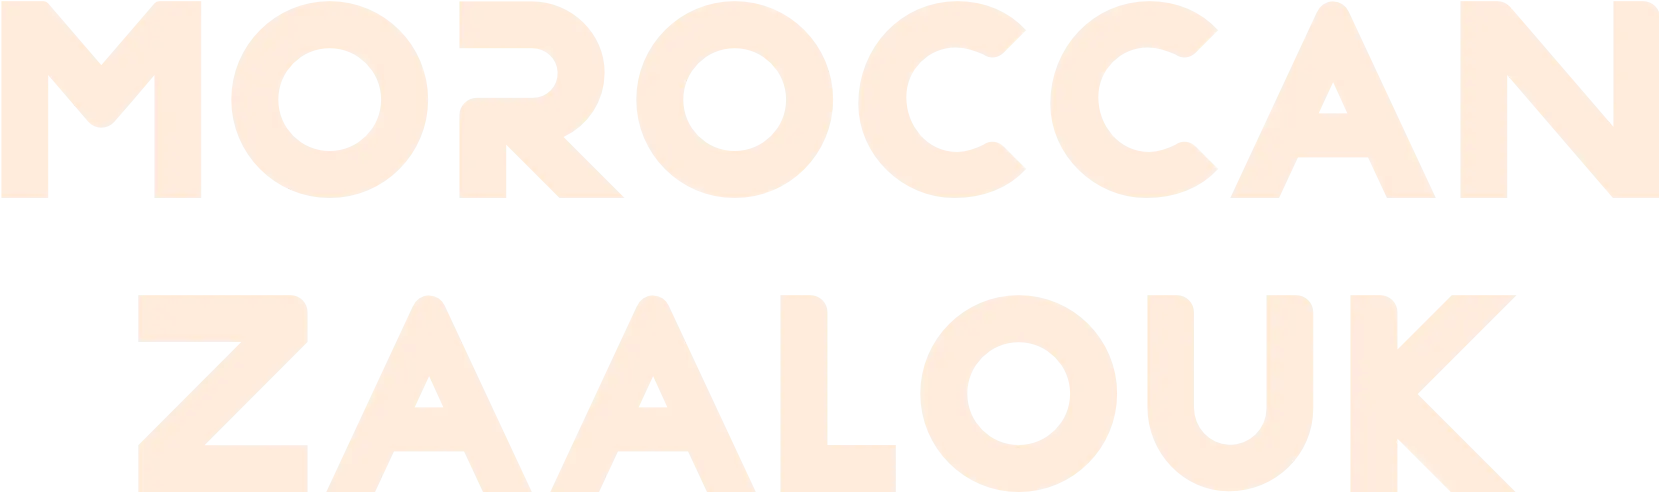 Moroccan Zaalouk logo